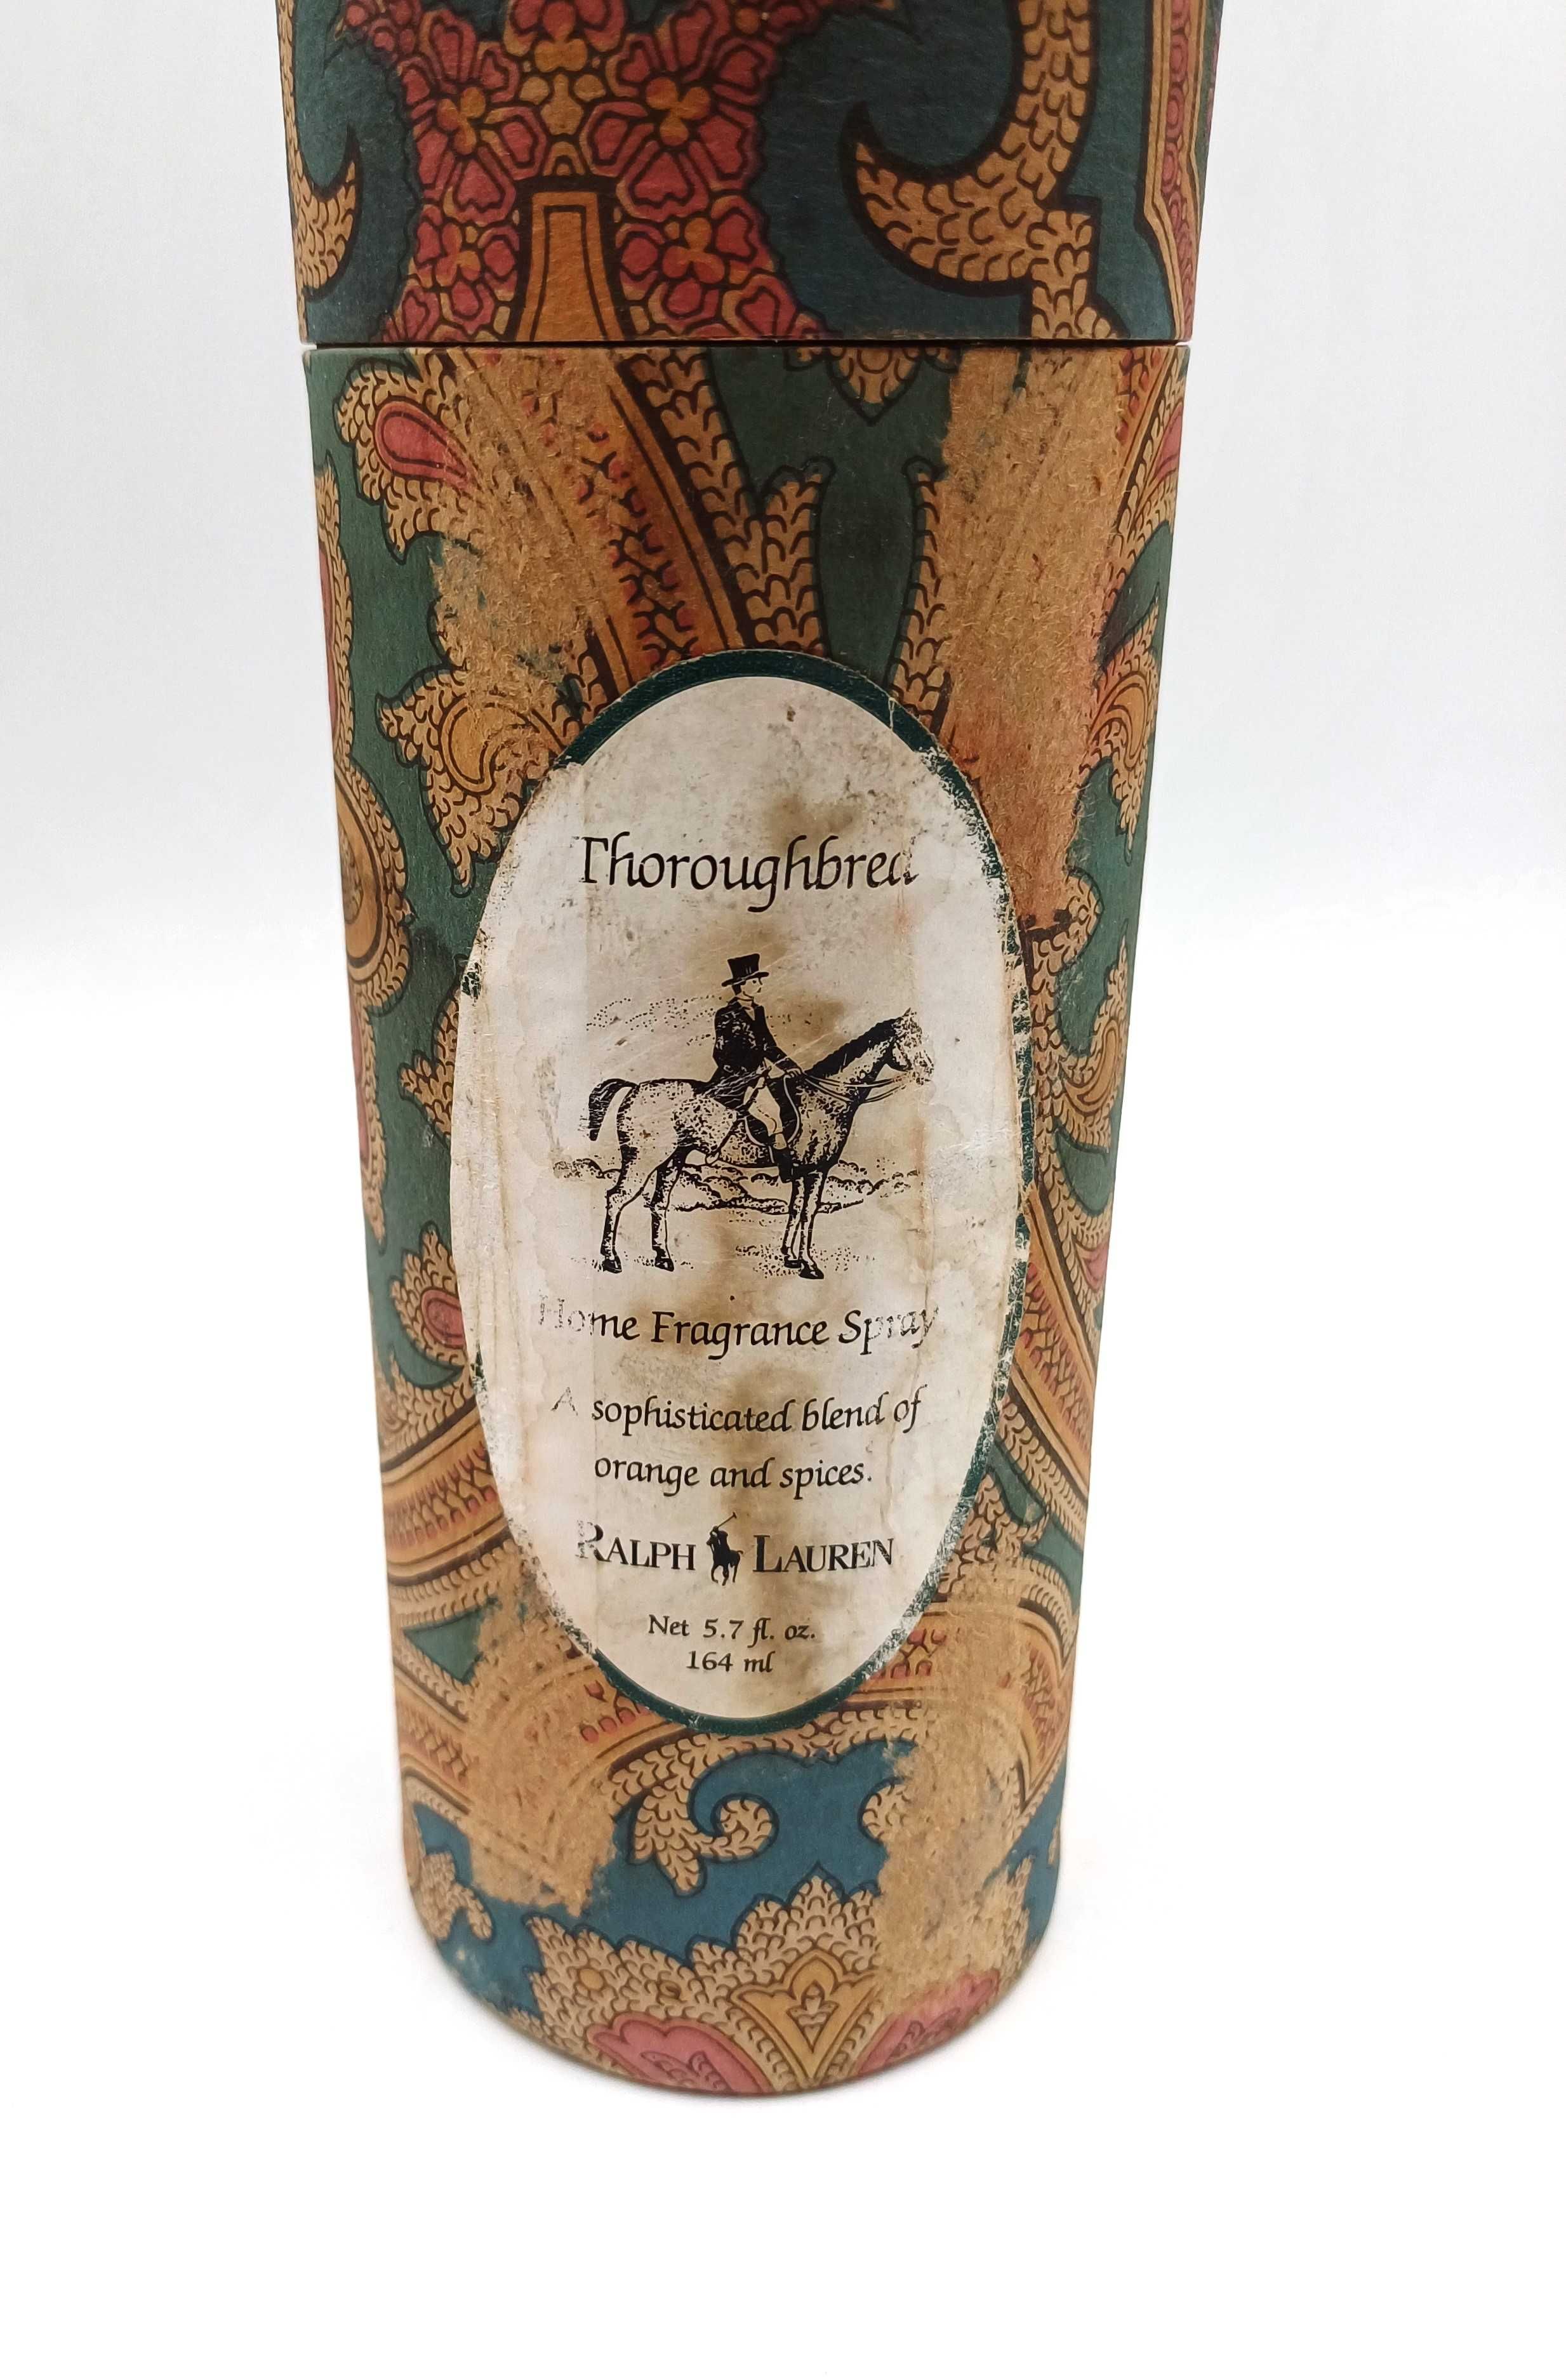 Vintage parfum de camera Ralph Lauren - Thoroughbred - 164 ml